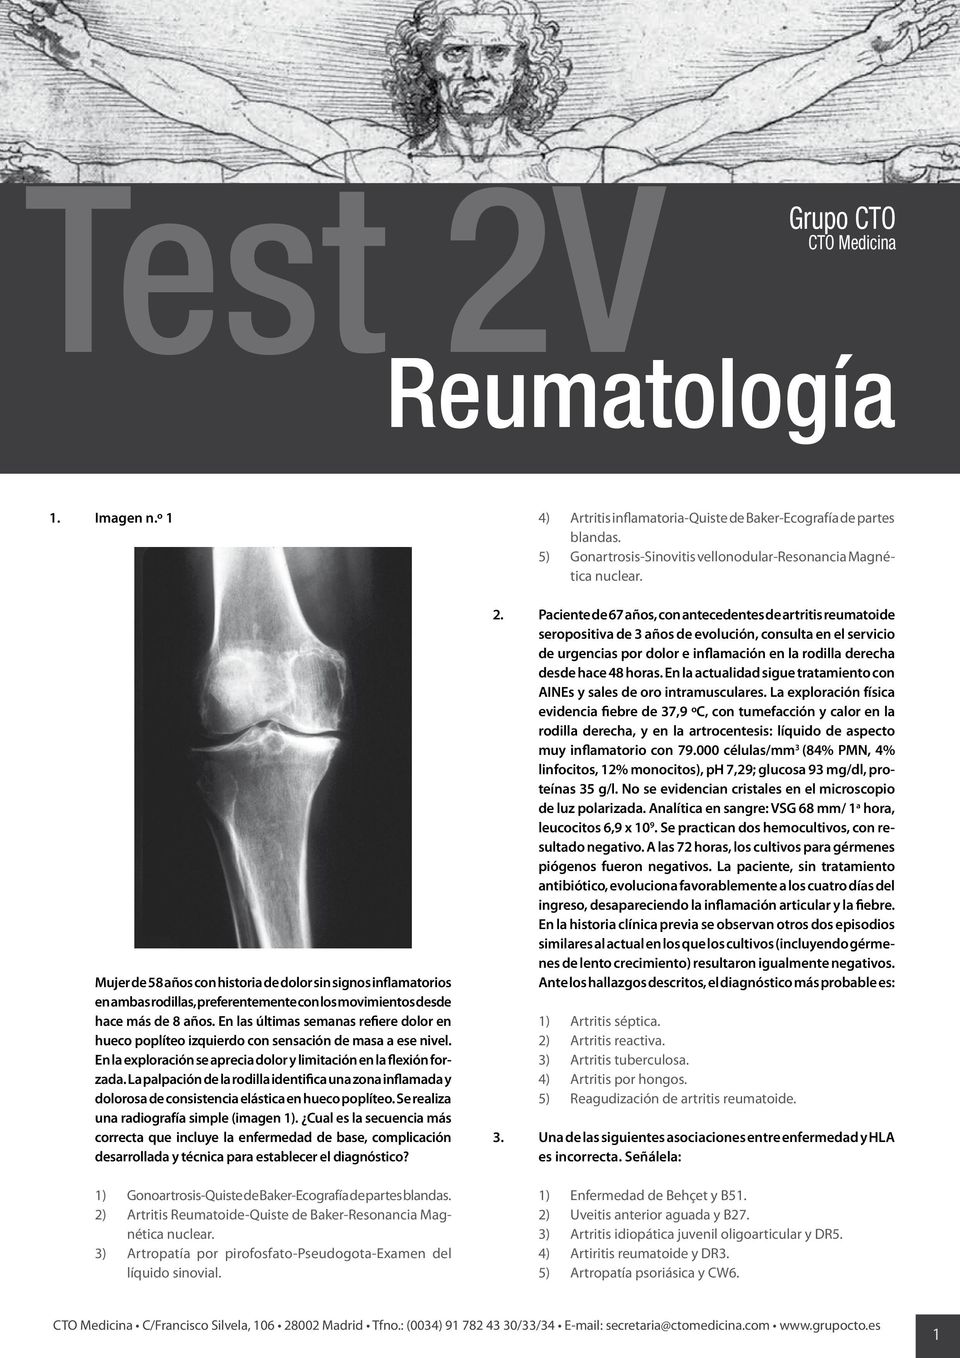 La palpación de la rodilla identifica una zona inflamada y dolorosa de consistencia elástica en hueco poplíteo. Se realiza una radiografía simple (imagen ).